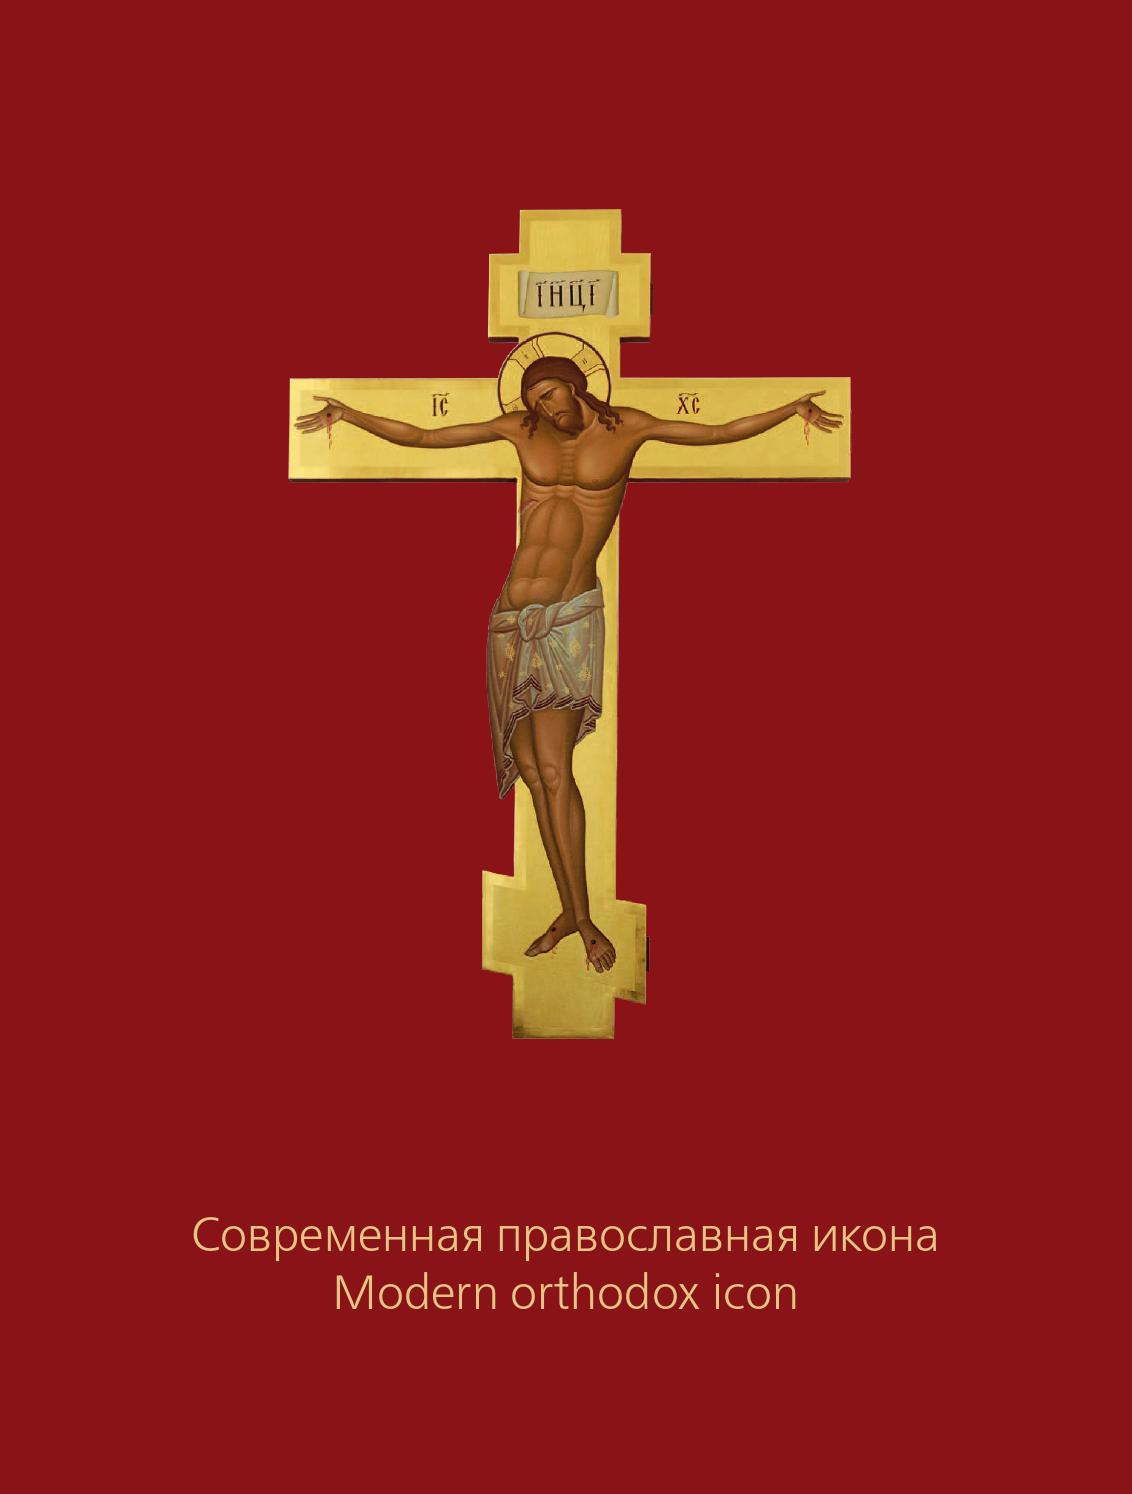 Современная православная икона, 2013, Кутейникова Нина